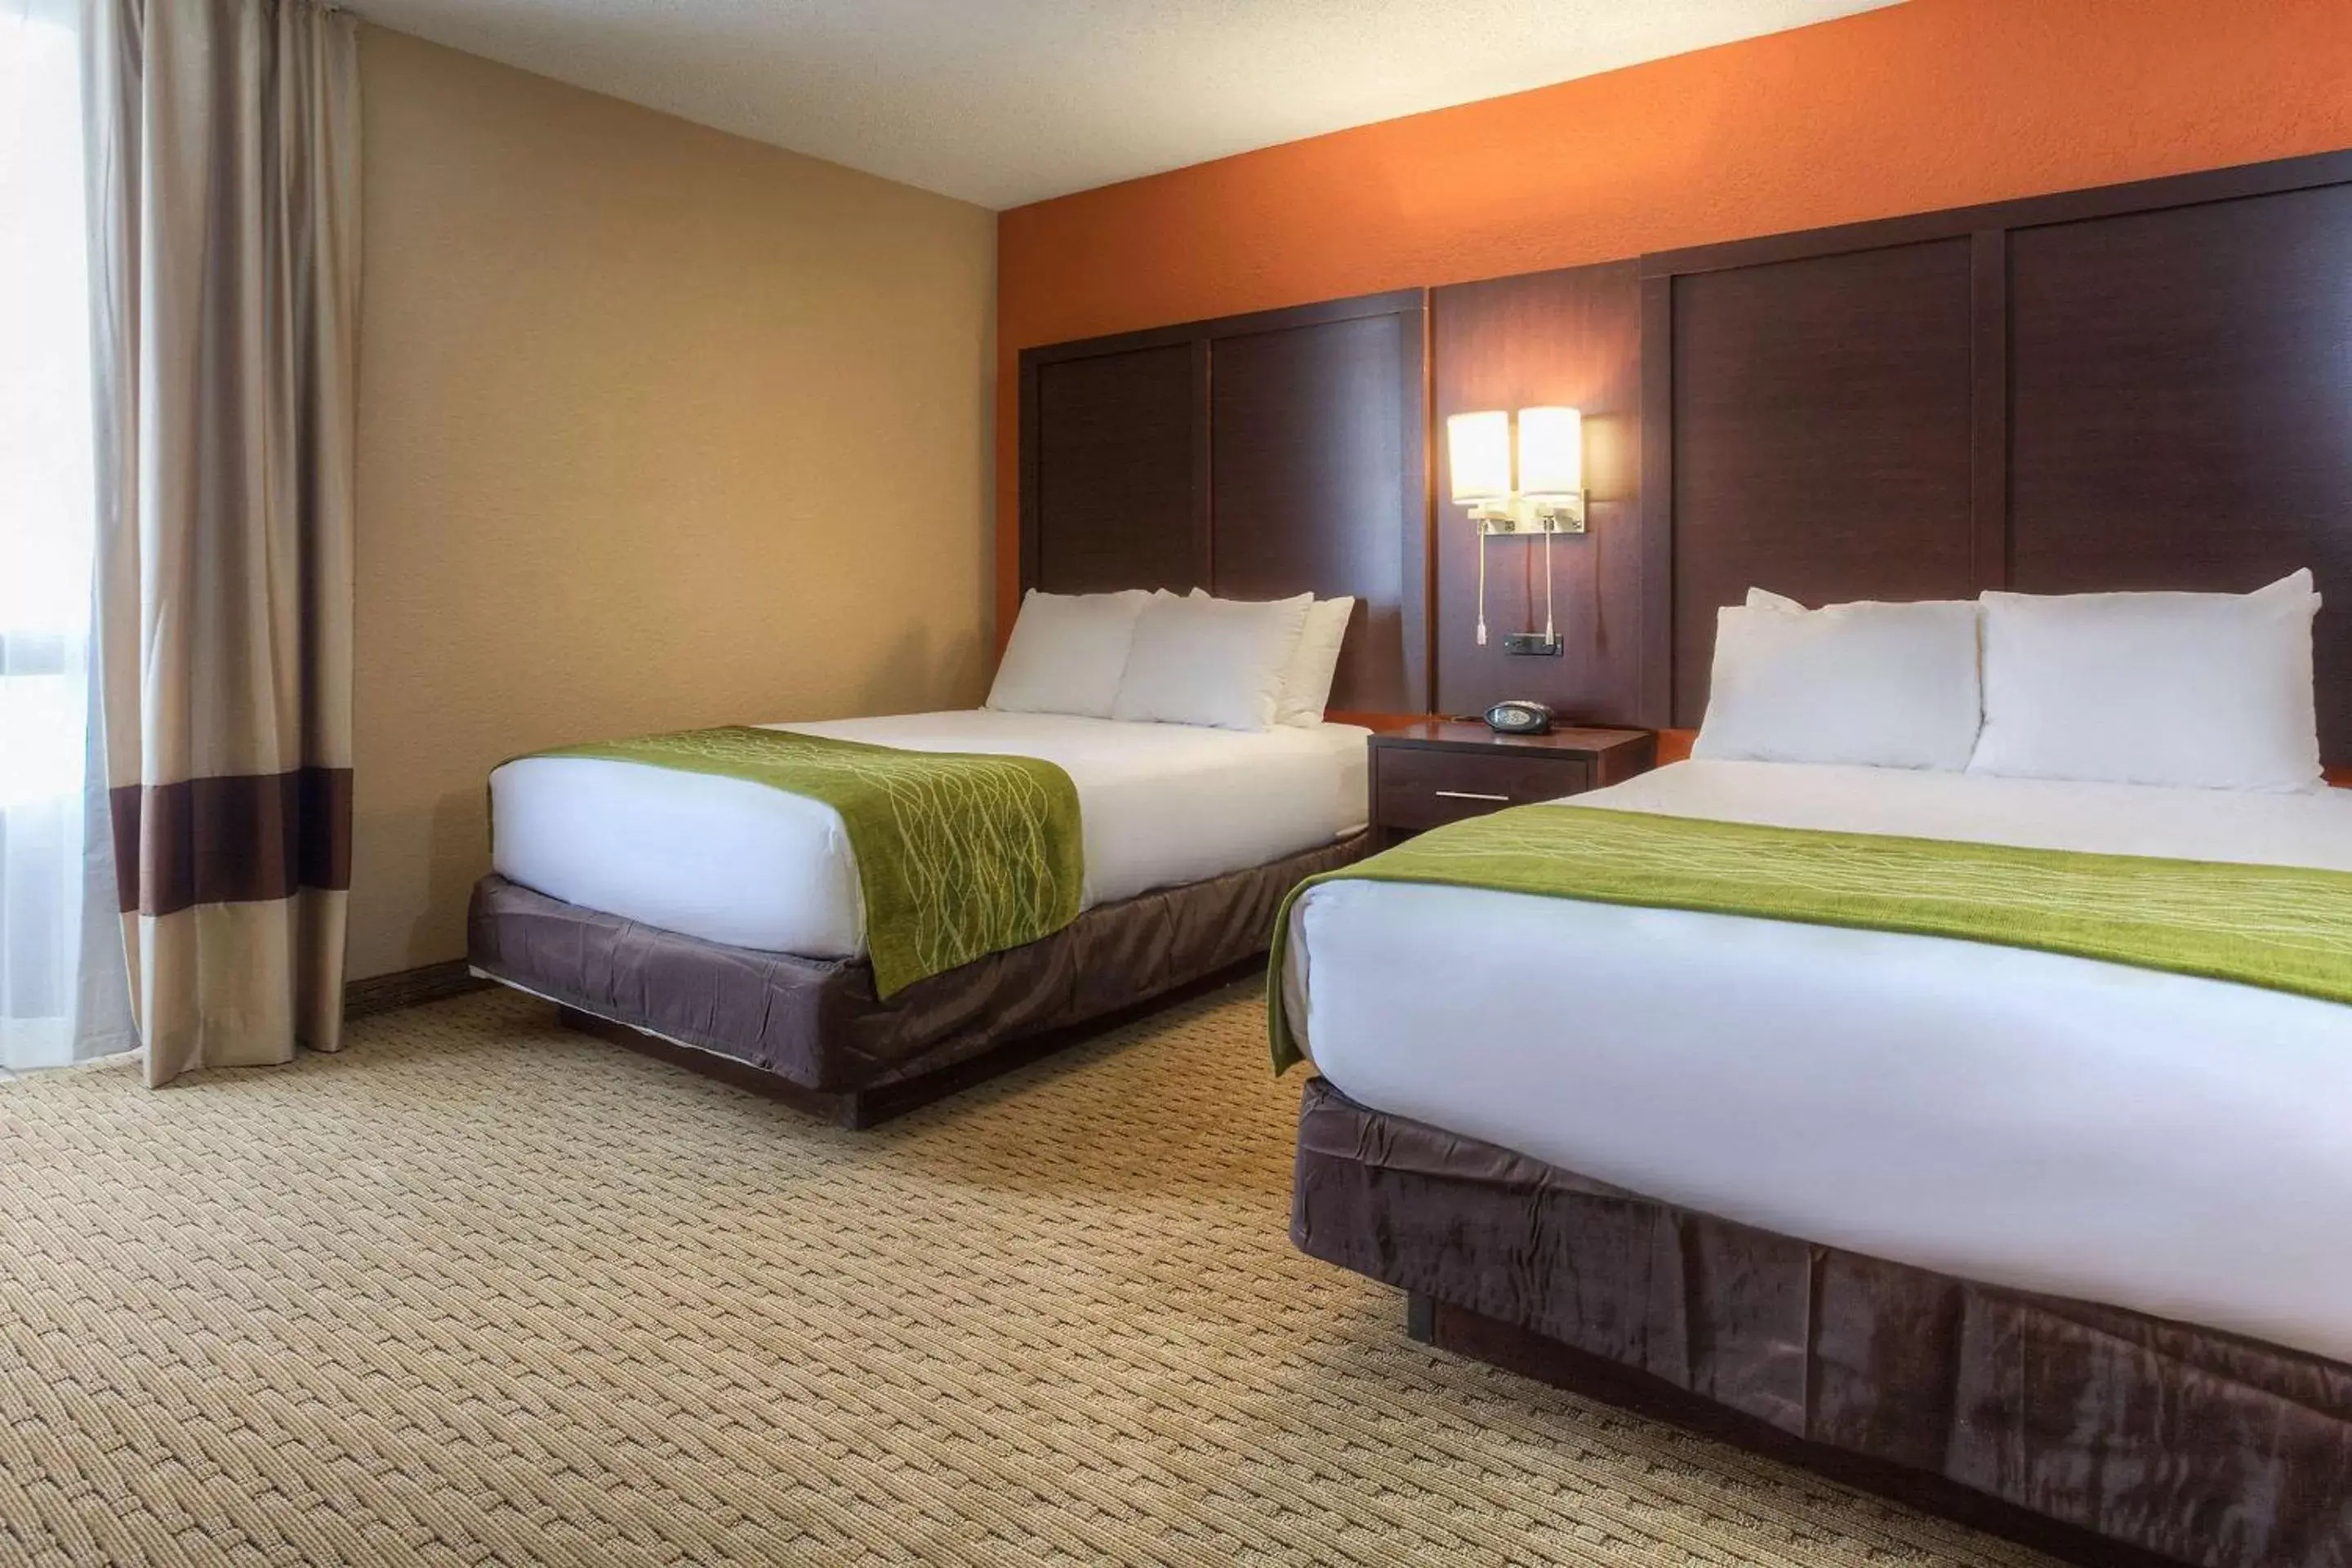 Bedroom, Bed in Comfort Inn & Suites Evansville Airport